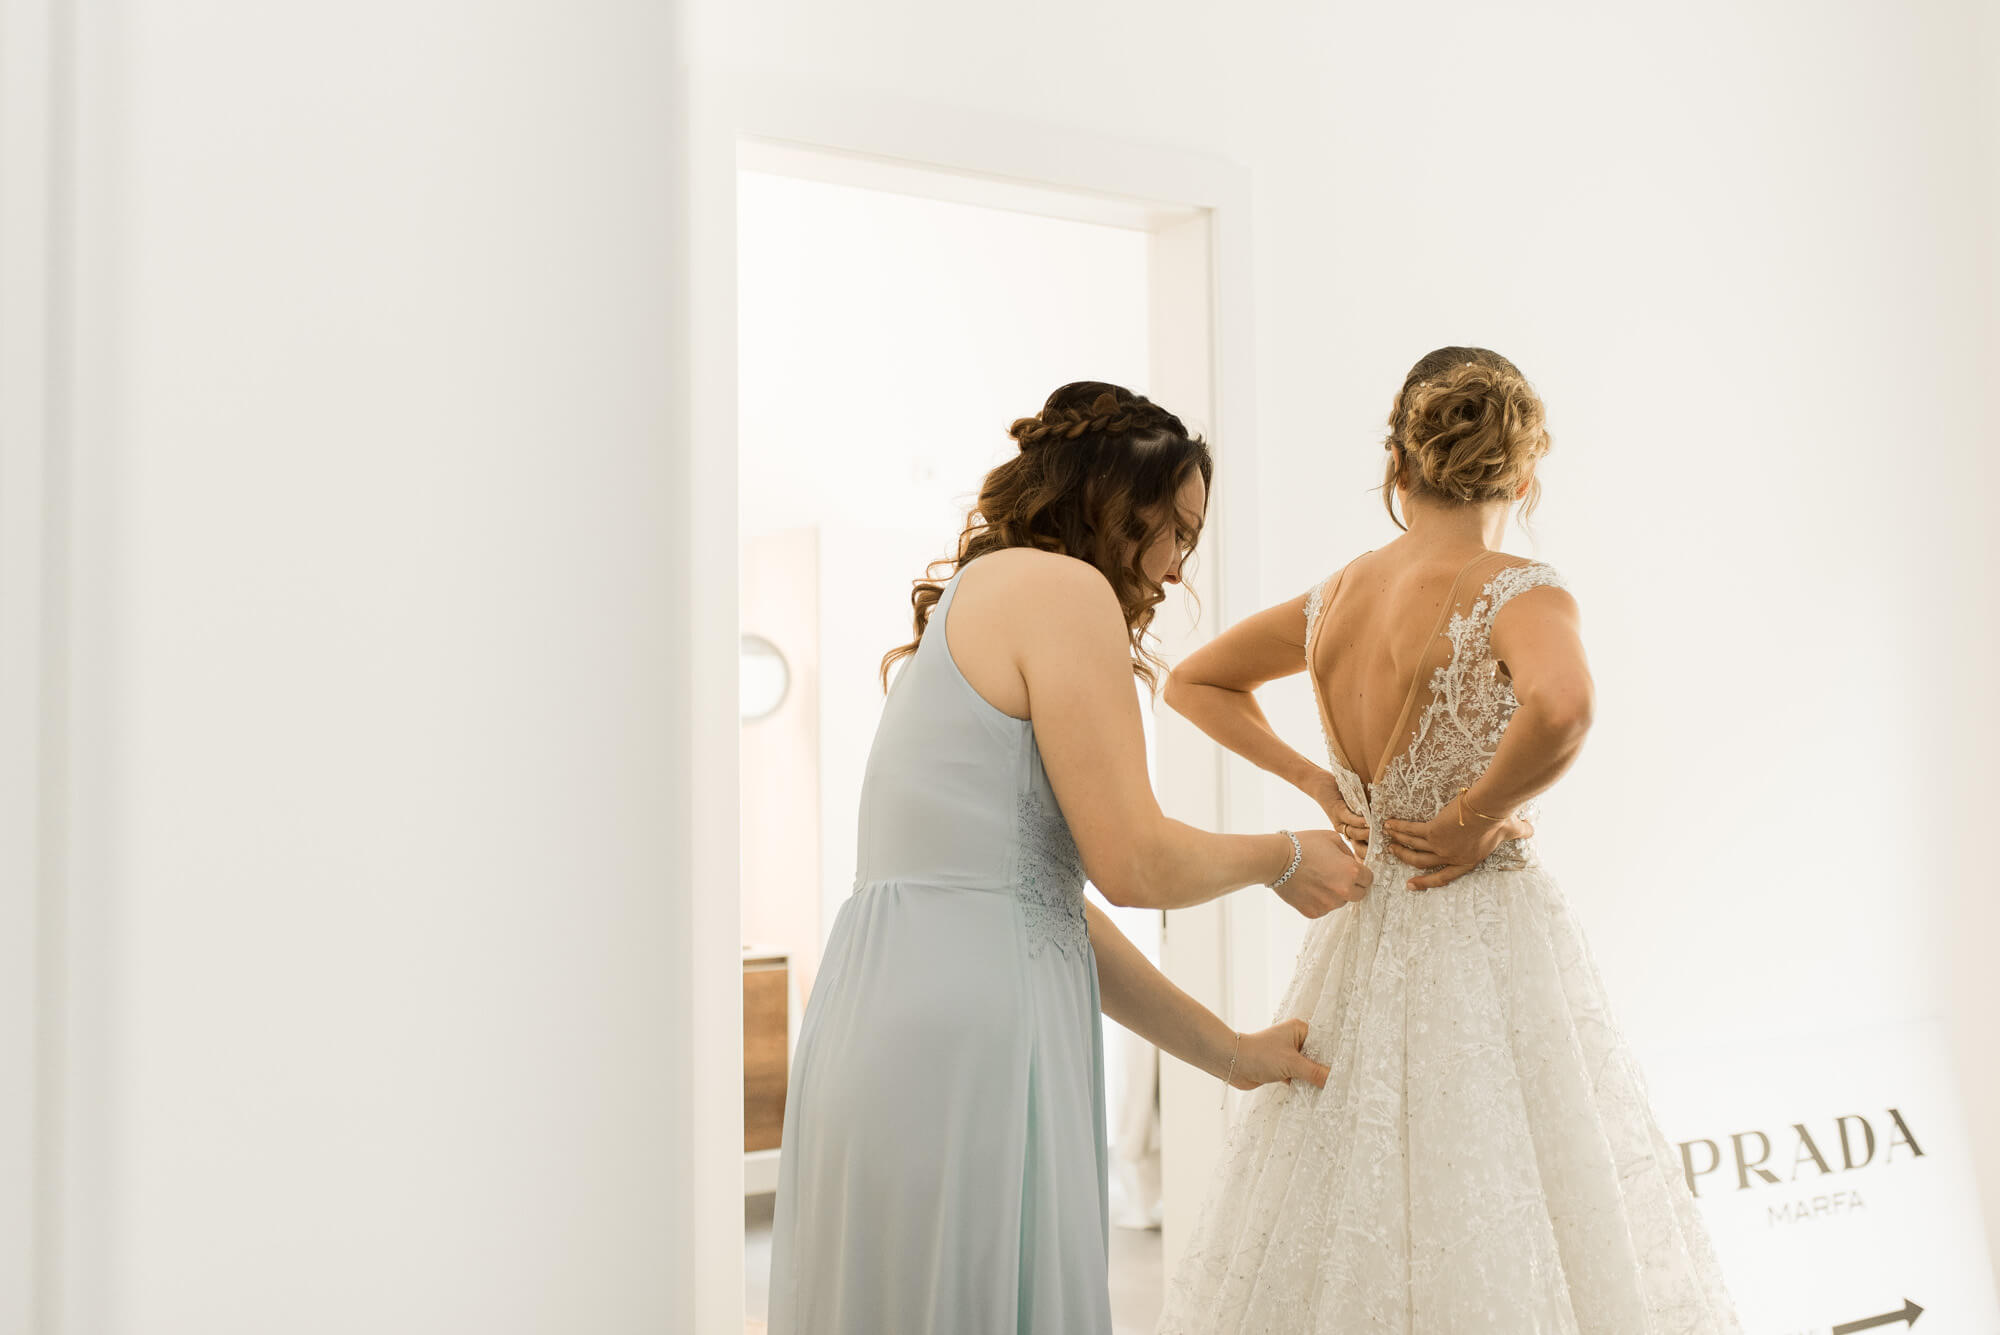 Trauzeugin schließt der Braut das Hochzeitskleid von Lorenzo Rossi und im Hintergrund ist ein Schild von Prada